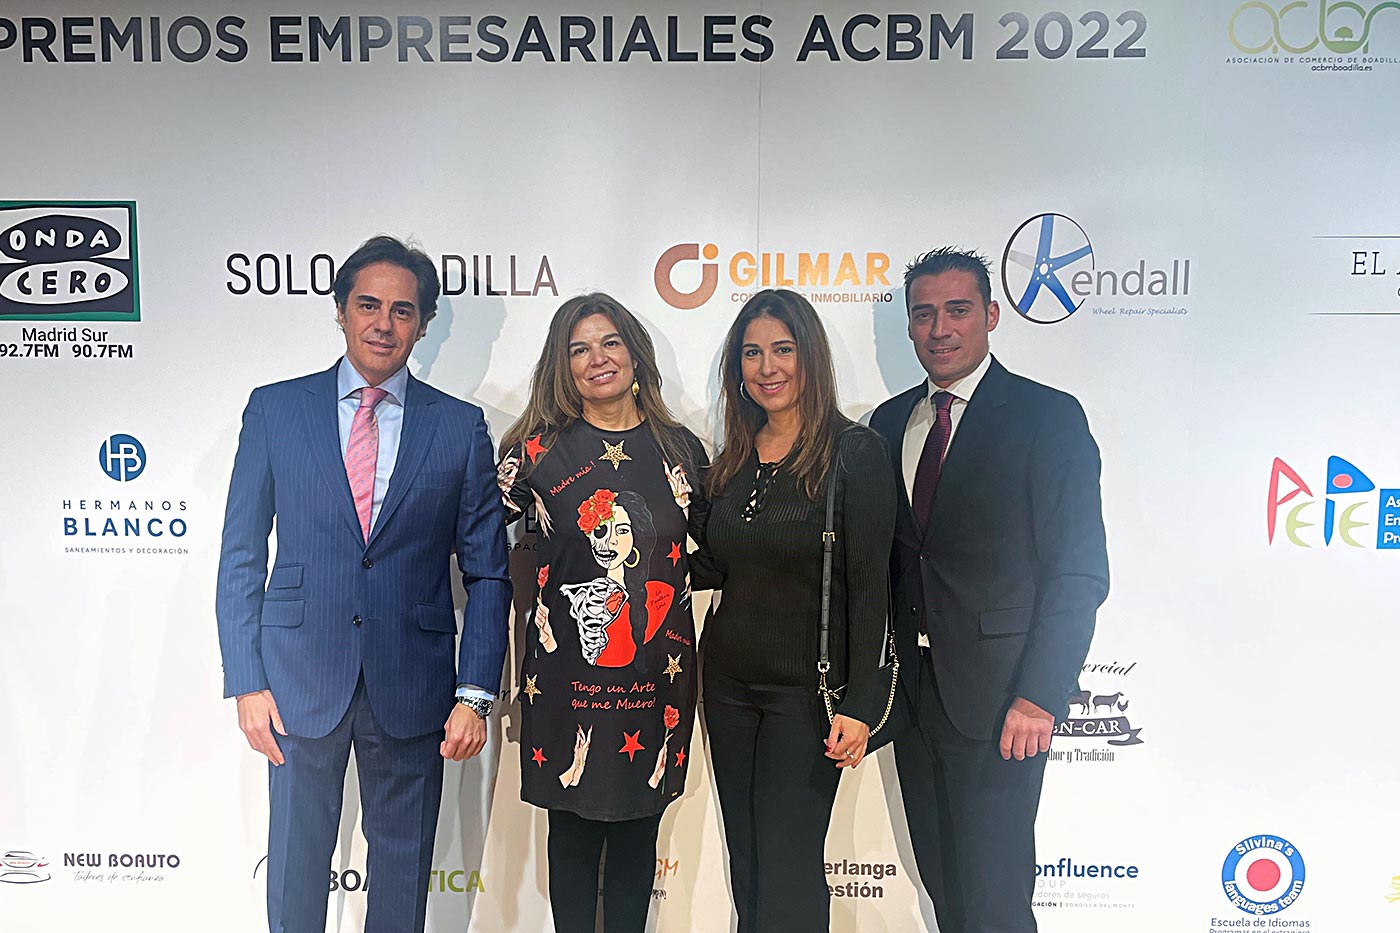 GILMAR Boadilla patrocina los Premios Empresariales de ACBM